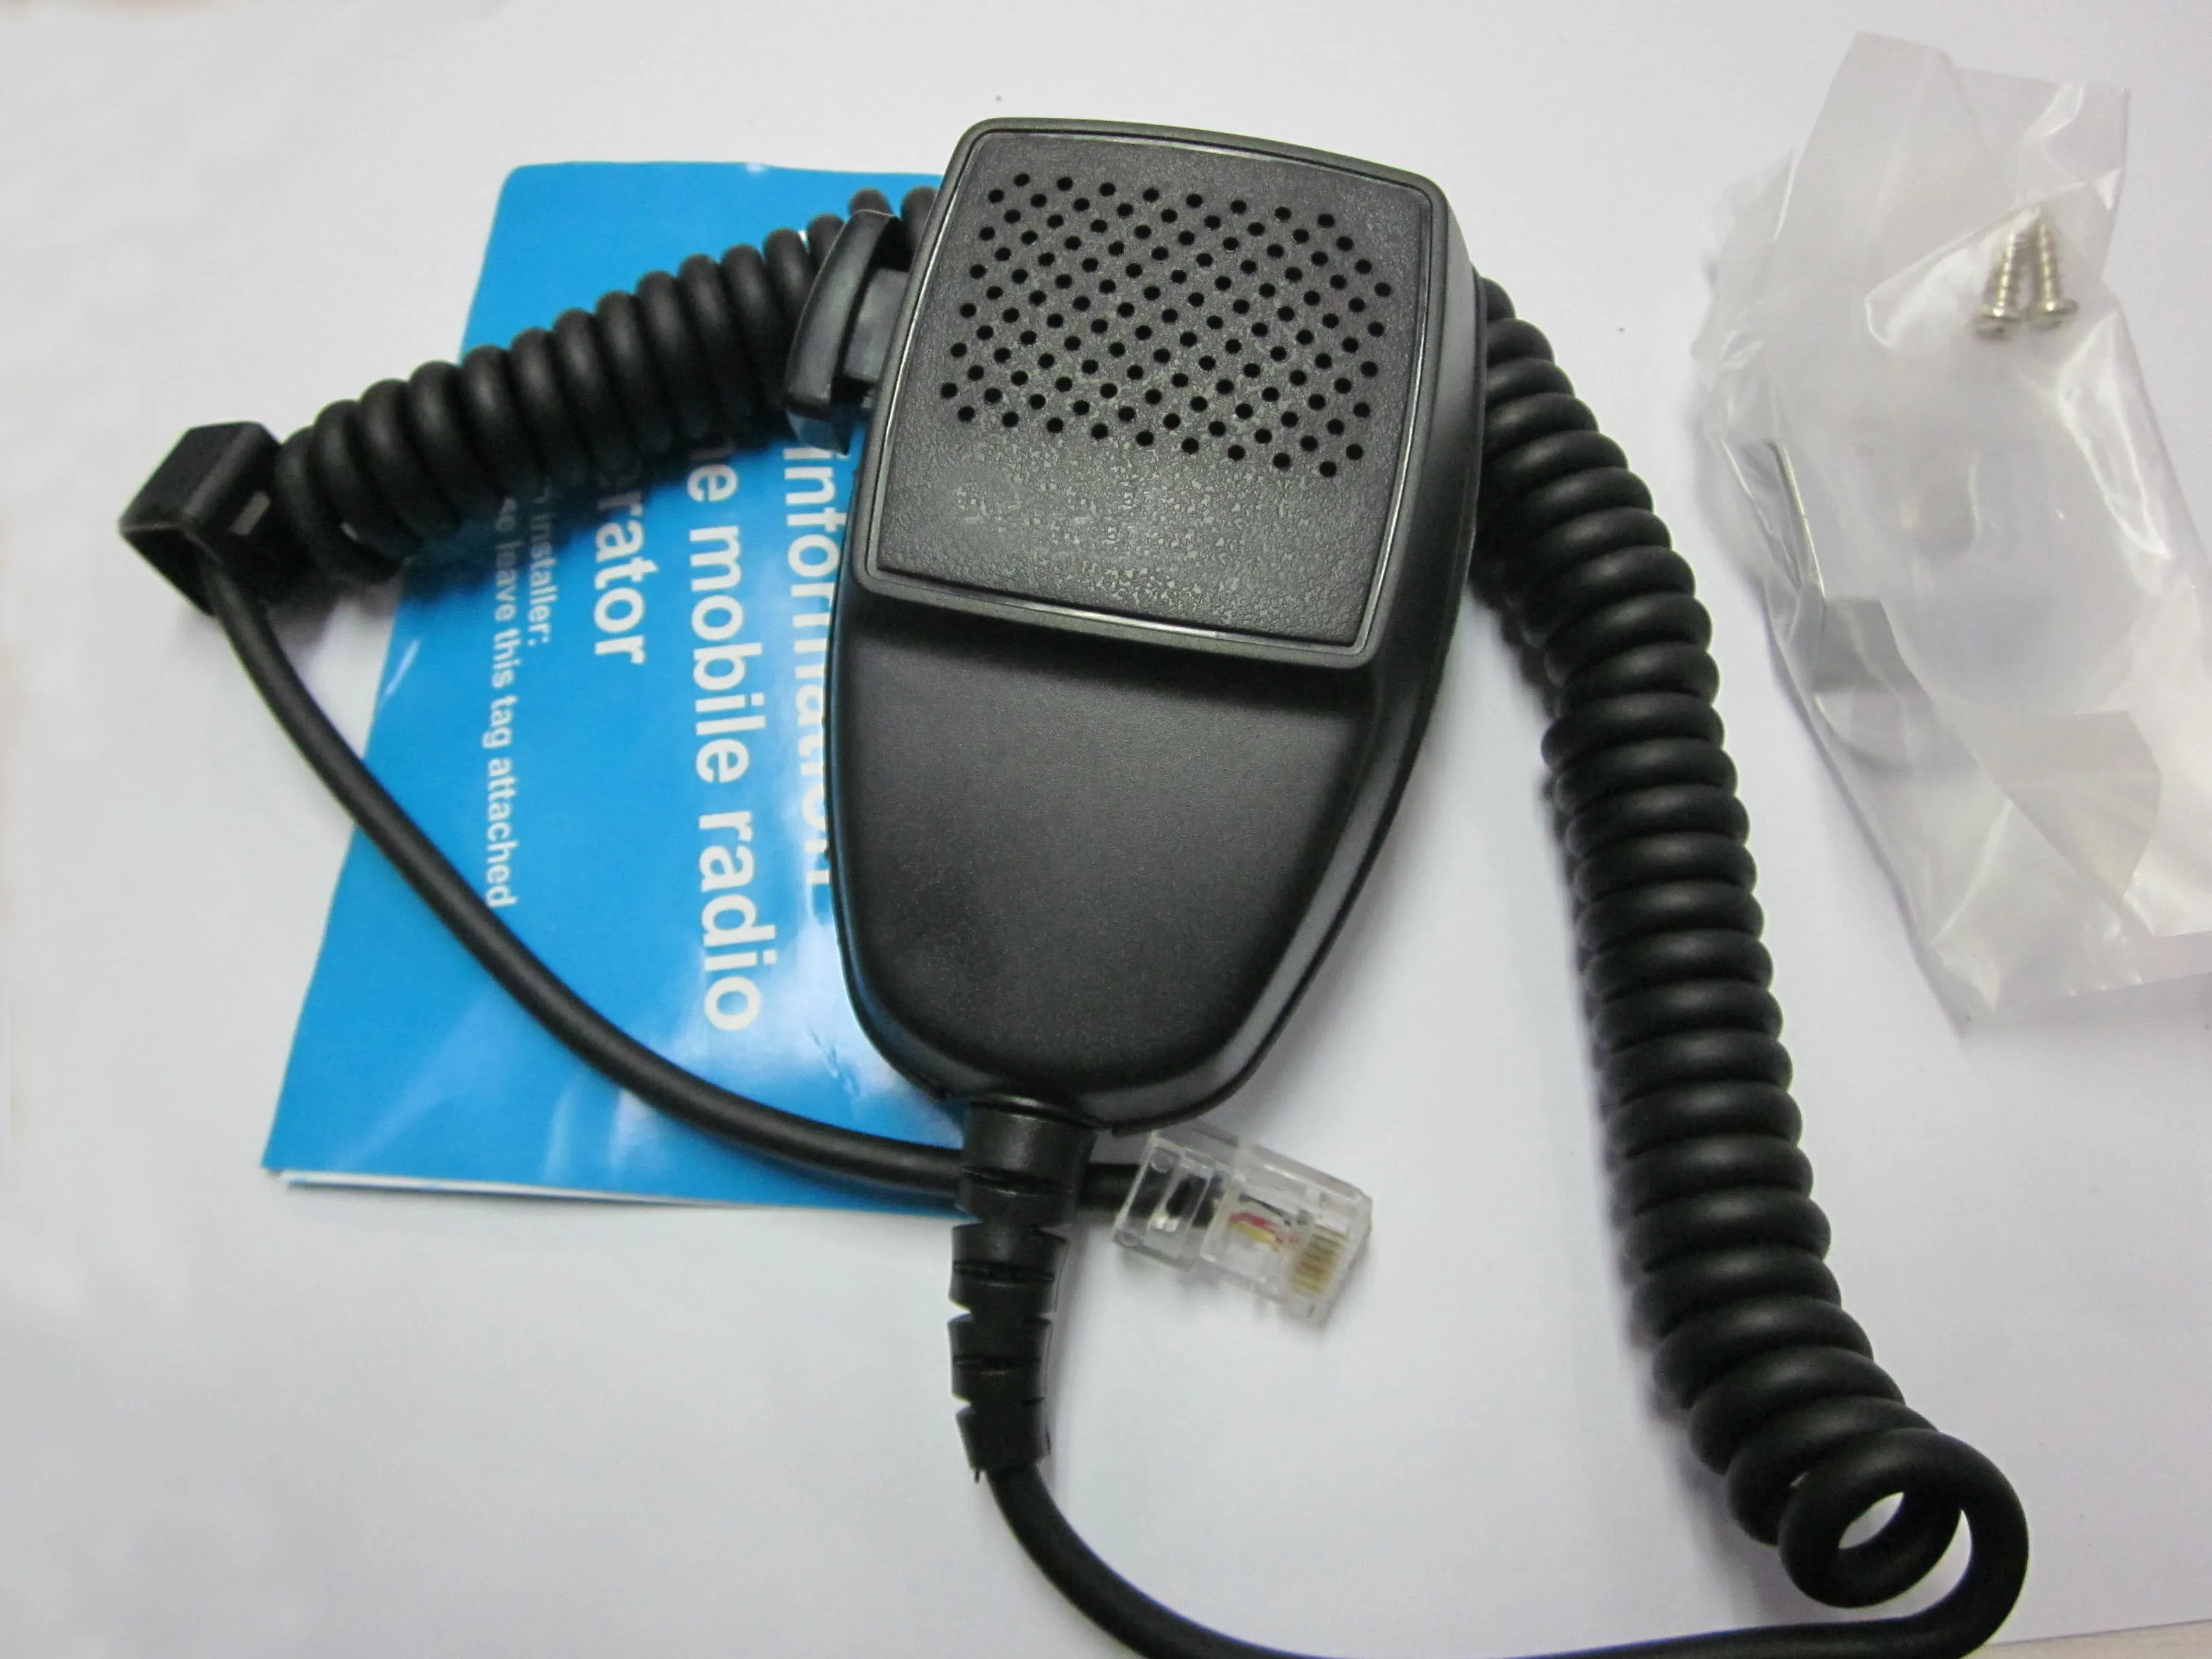 

10 шт. 8-контактный микрофон PTT для Motorola GM300 GM340 CM160 CM200 CM300 EM200 мобильный радиоприемник PRO5100 CDM750 CDM1250 HMN3596A